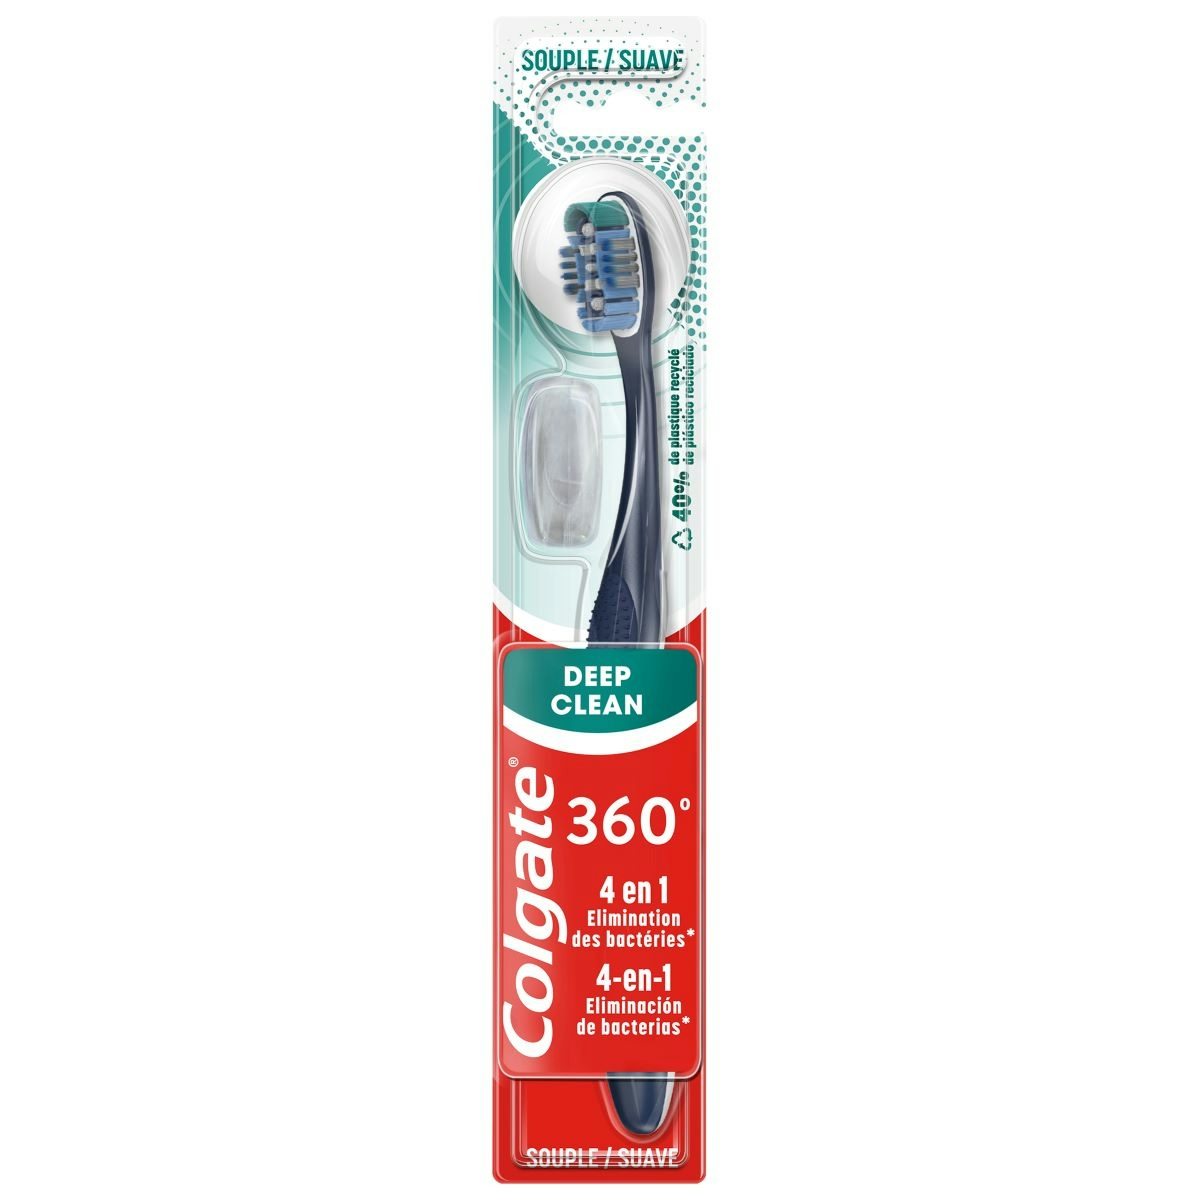 Cepillo de dientes Colgate 360 limpieza completa, suave